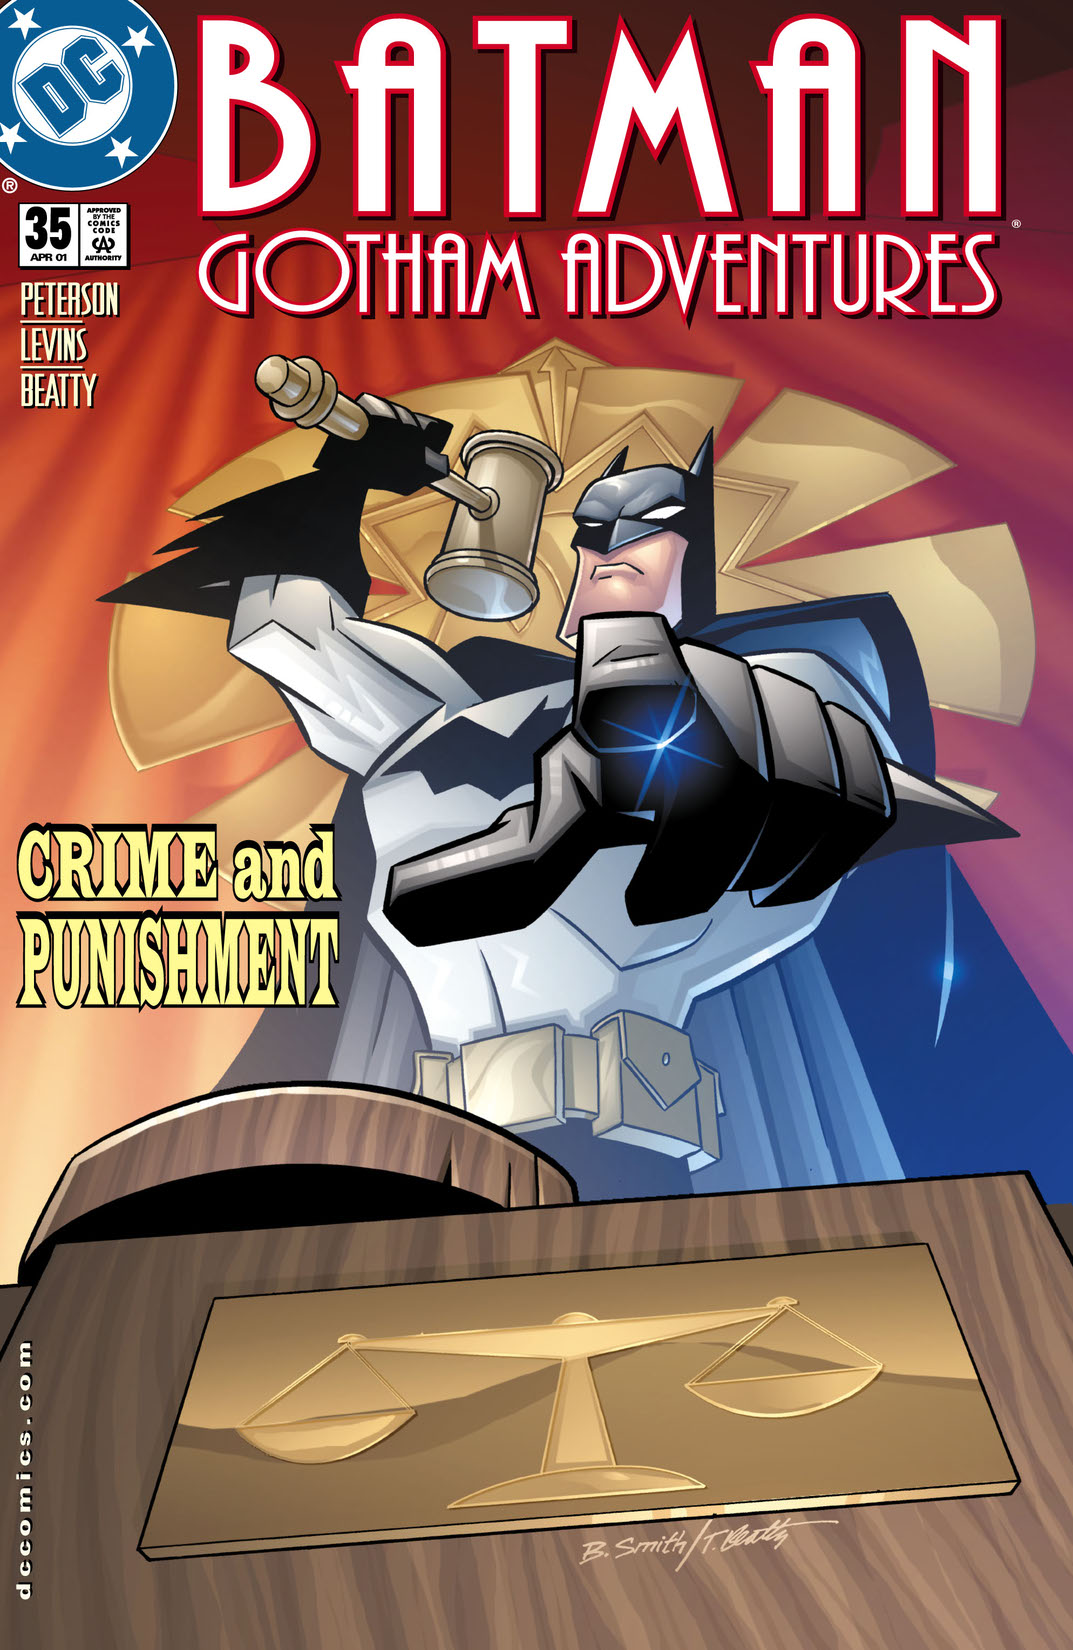 Batman: Gotham Adventures #35 preview images